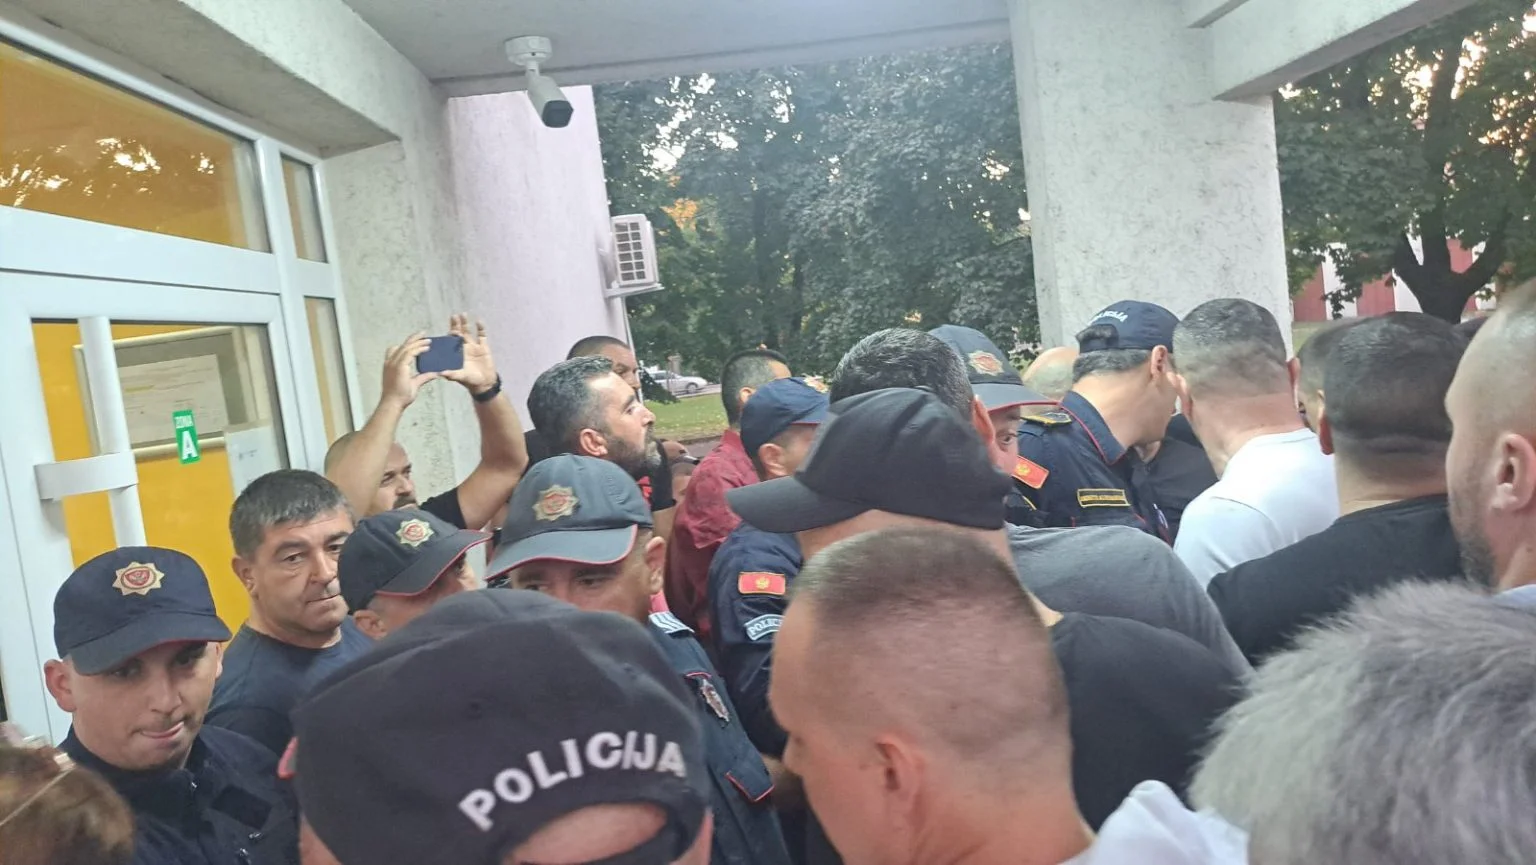 UP: Tokom protesta zbog smrti bebe u Nikšiću spriječen napad na direktoricu bolnice, počinioci verbalnog nasilja će biti procesuirani